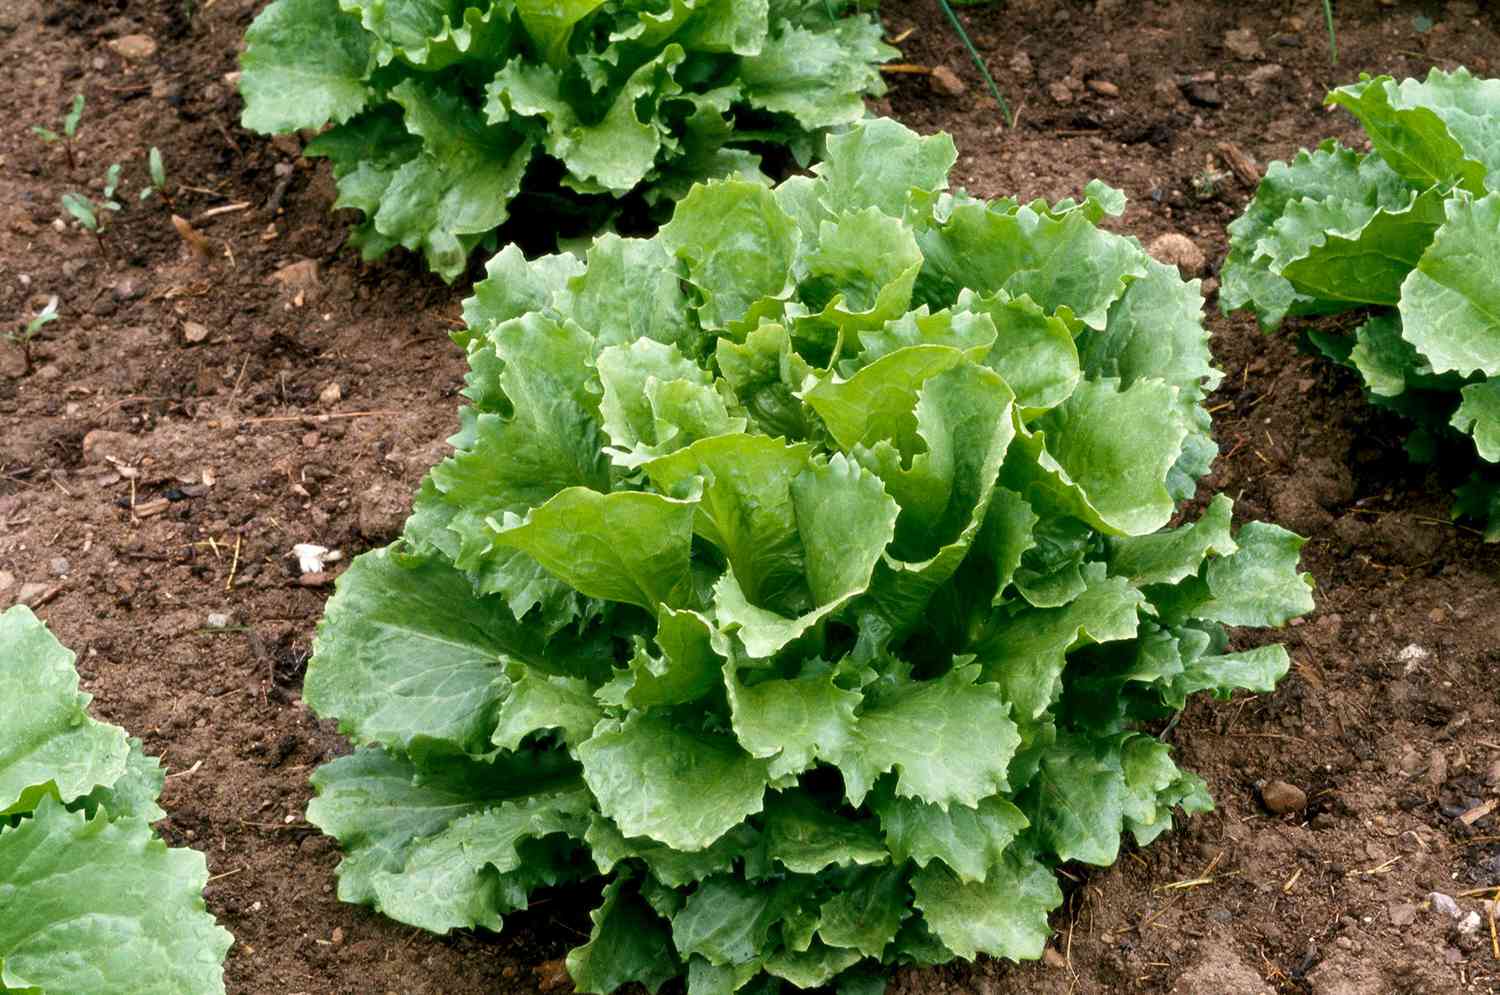 'Ithaca' head lettuce